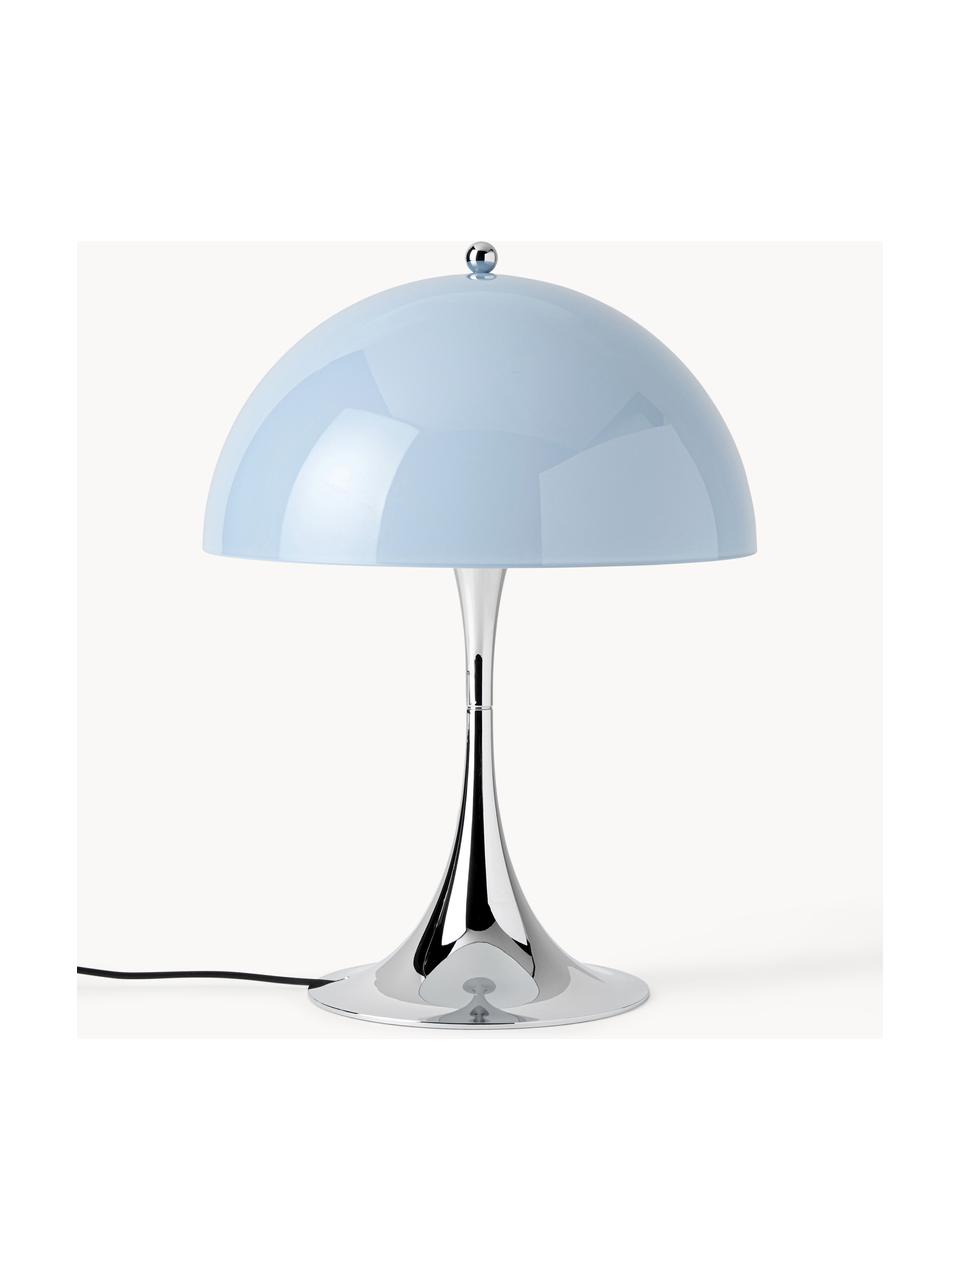 Lampa stołowa LED z funkcją przyciemniania Panthella, W 34 cm, Stelaż: aluminium powlekane, Jasnoniebieskie szkło akrylowe, odcienie srebrnego, Ø 25 x 34 cm